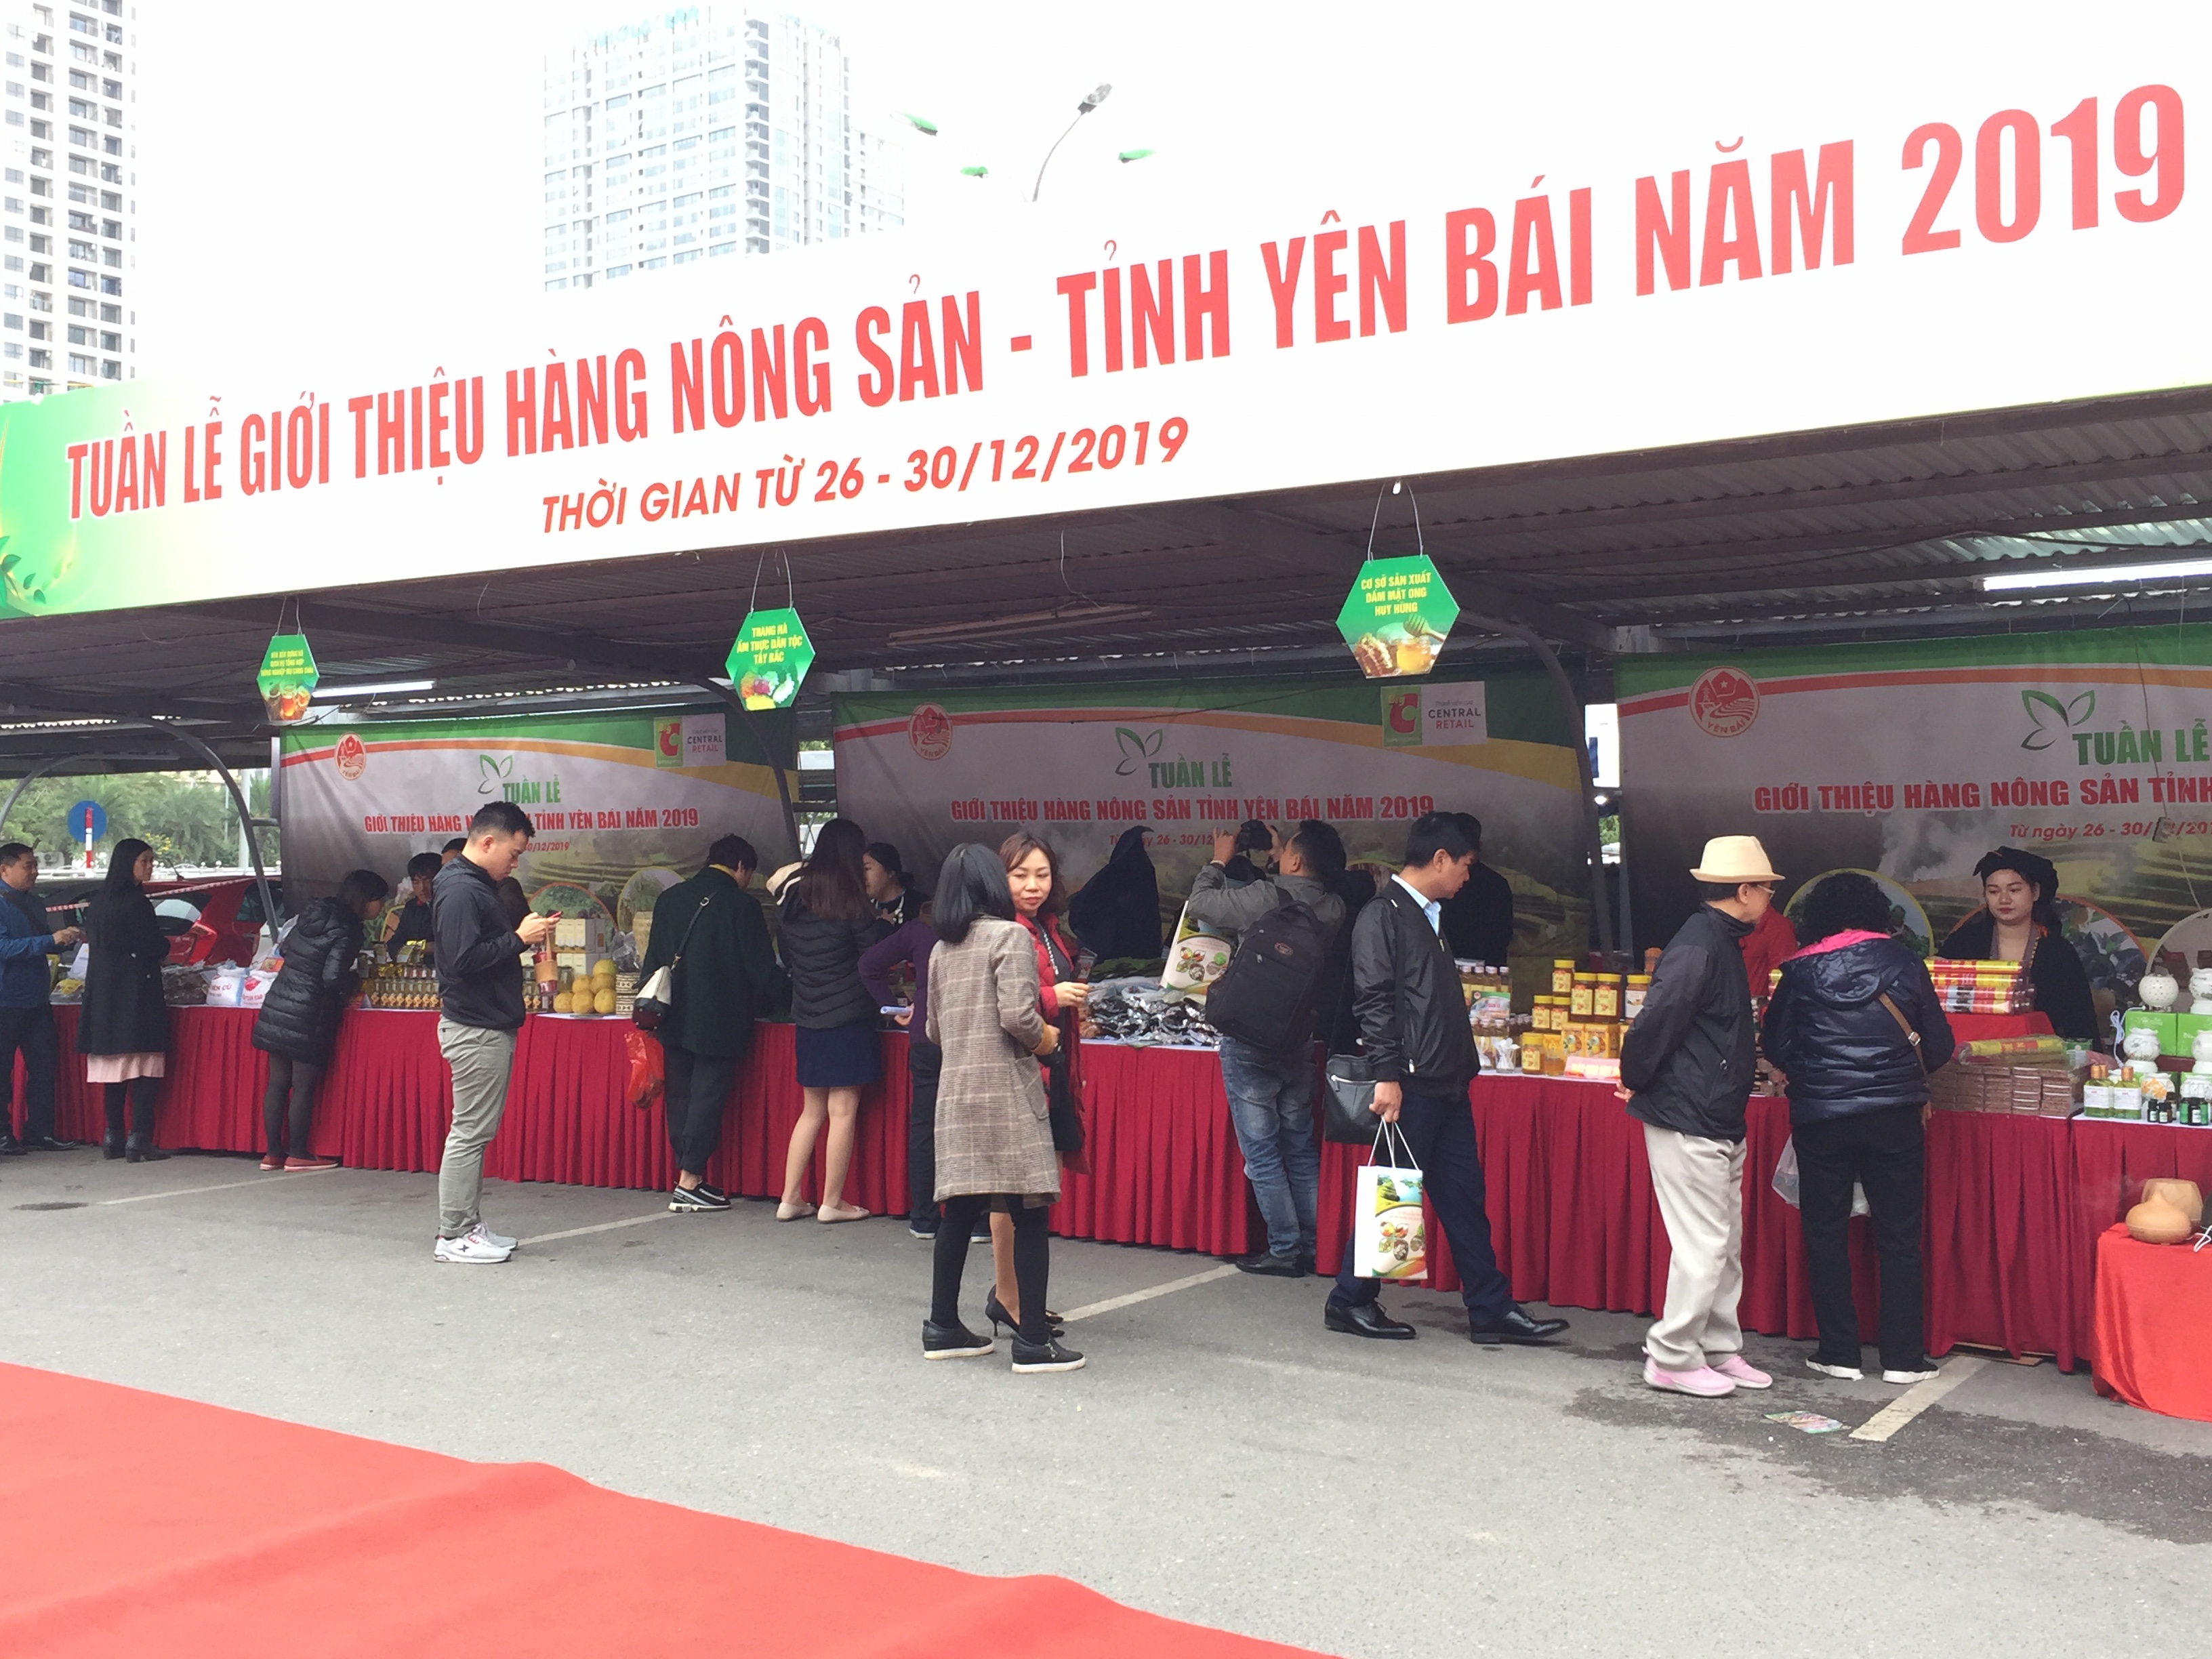 Tuần lễ giới thiệu hàng  nông sản tỉnh Yên Bái năm 2019 tại Big C Thăng Long, Hà Nội